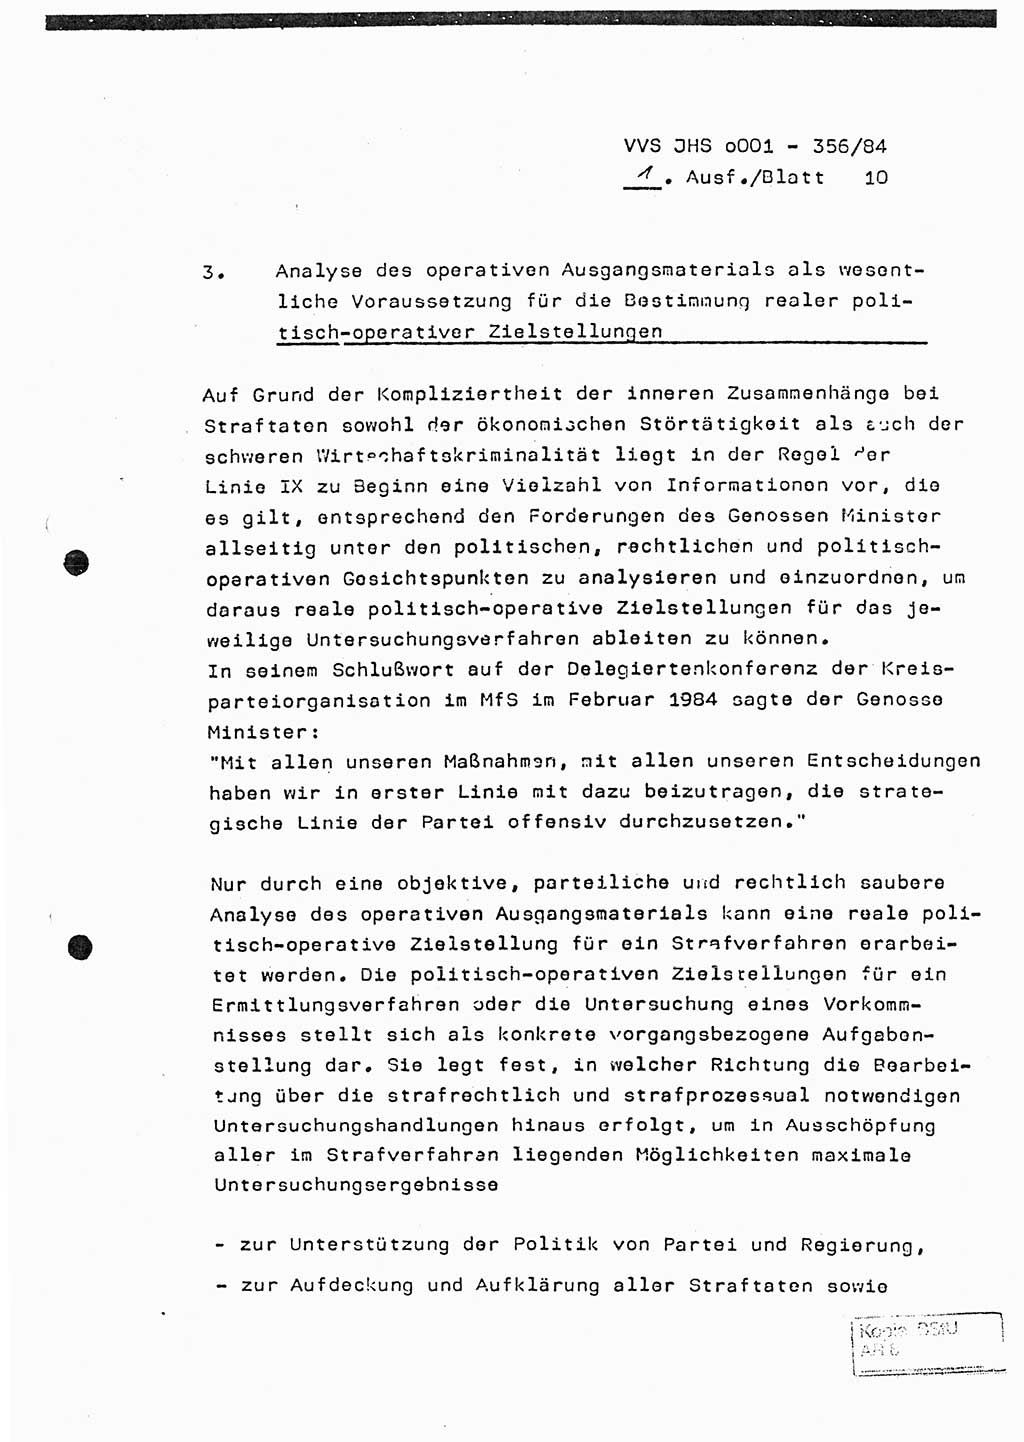 Diplomarbeit, Major Lutz Rahaus (HA Ⅸ/3), Ministerium für Staatssicherheit (MfS) [Deutsche Demokratische Republik (DDR)], Juristische Hochschule (JHS), Vertrauliche Verschlußsache (VVS) o001-356/84, Potsdam 1984, Seite 10 (Dipl.-Arb. MfS DDR JHS VVS o001-356/84 1984, S. 10)